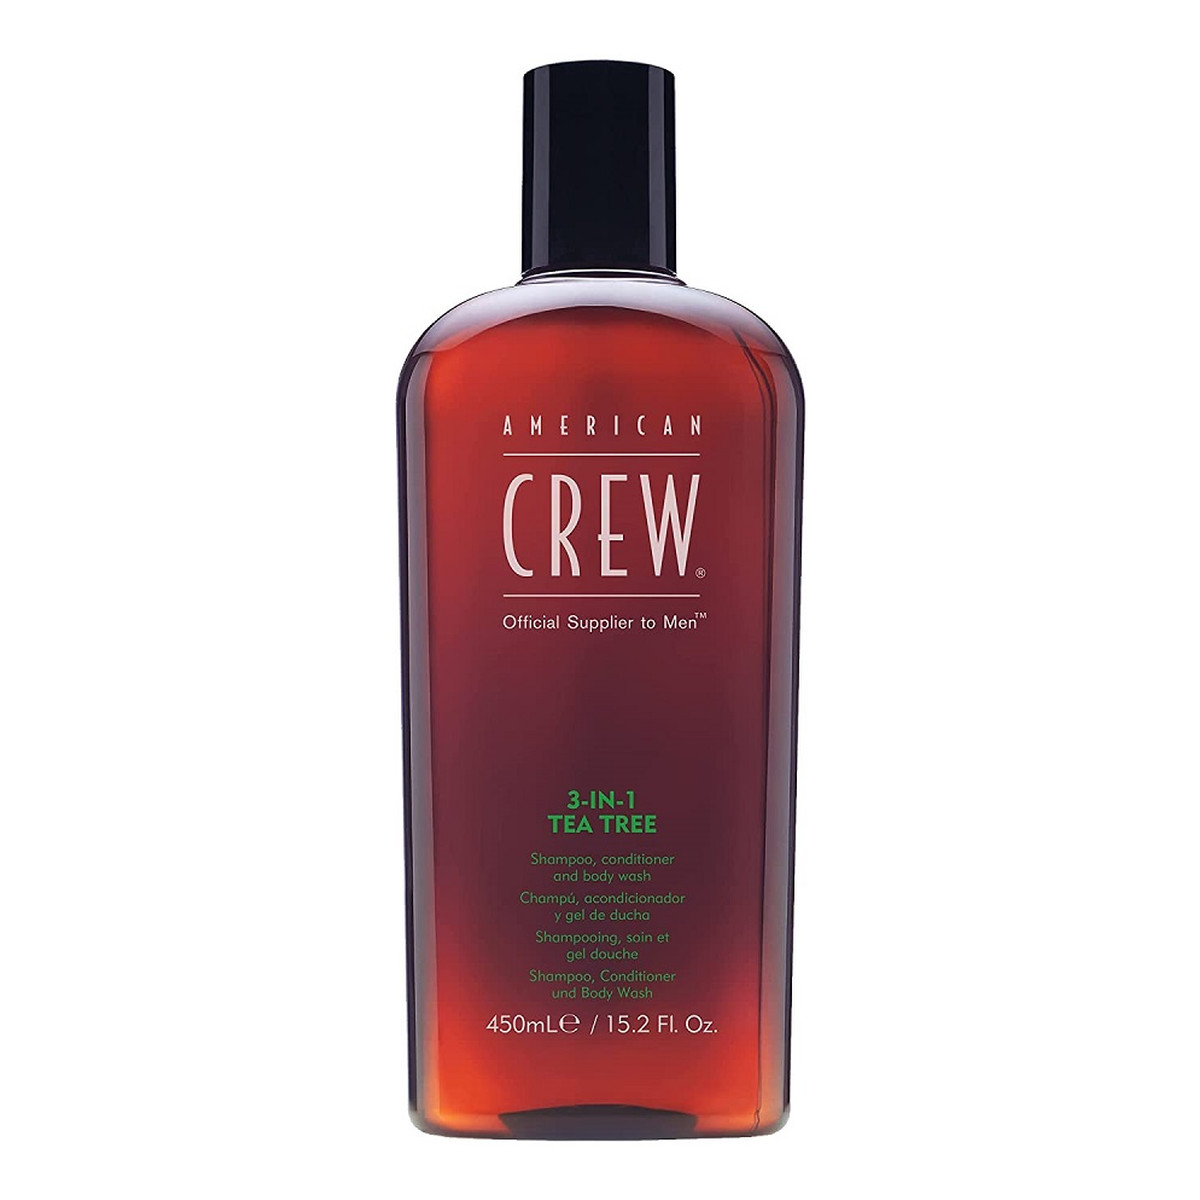 American Crew 3-in-1 Tea Tree szampon odżywka i Żel do mycia ciała 450ml